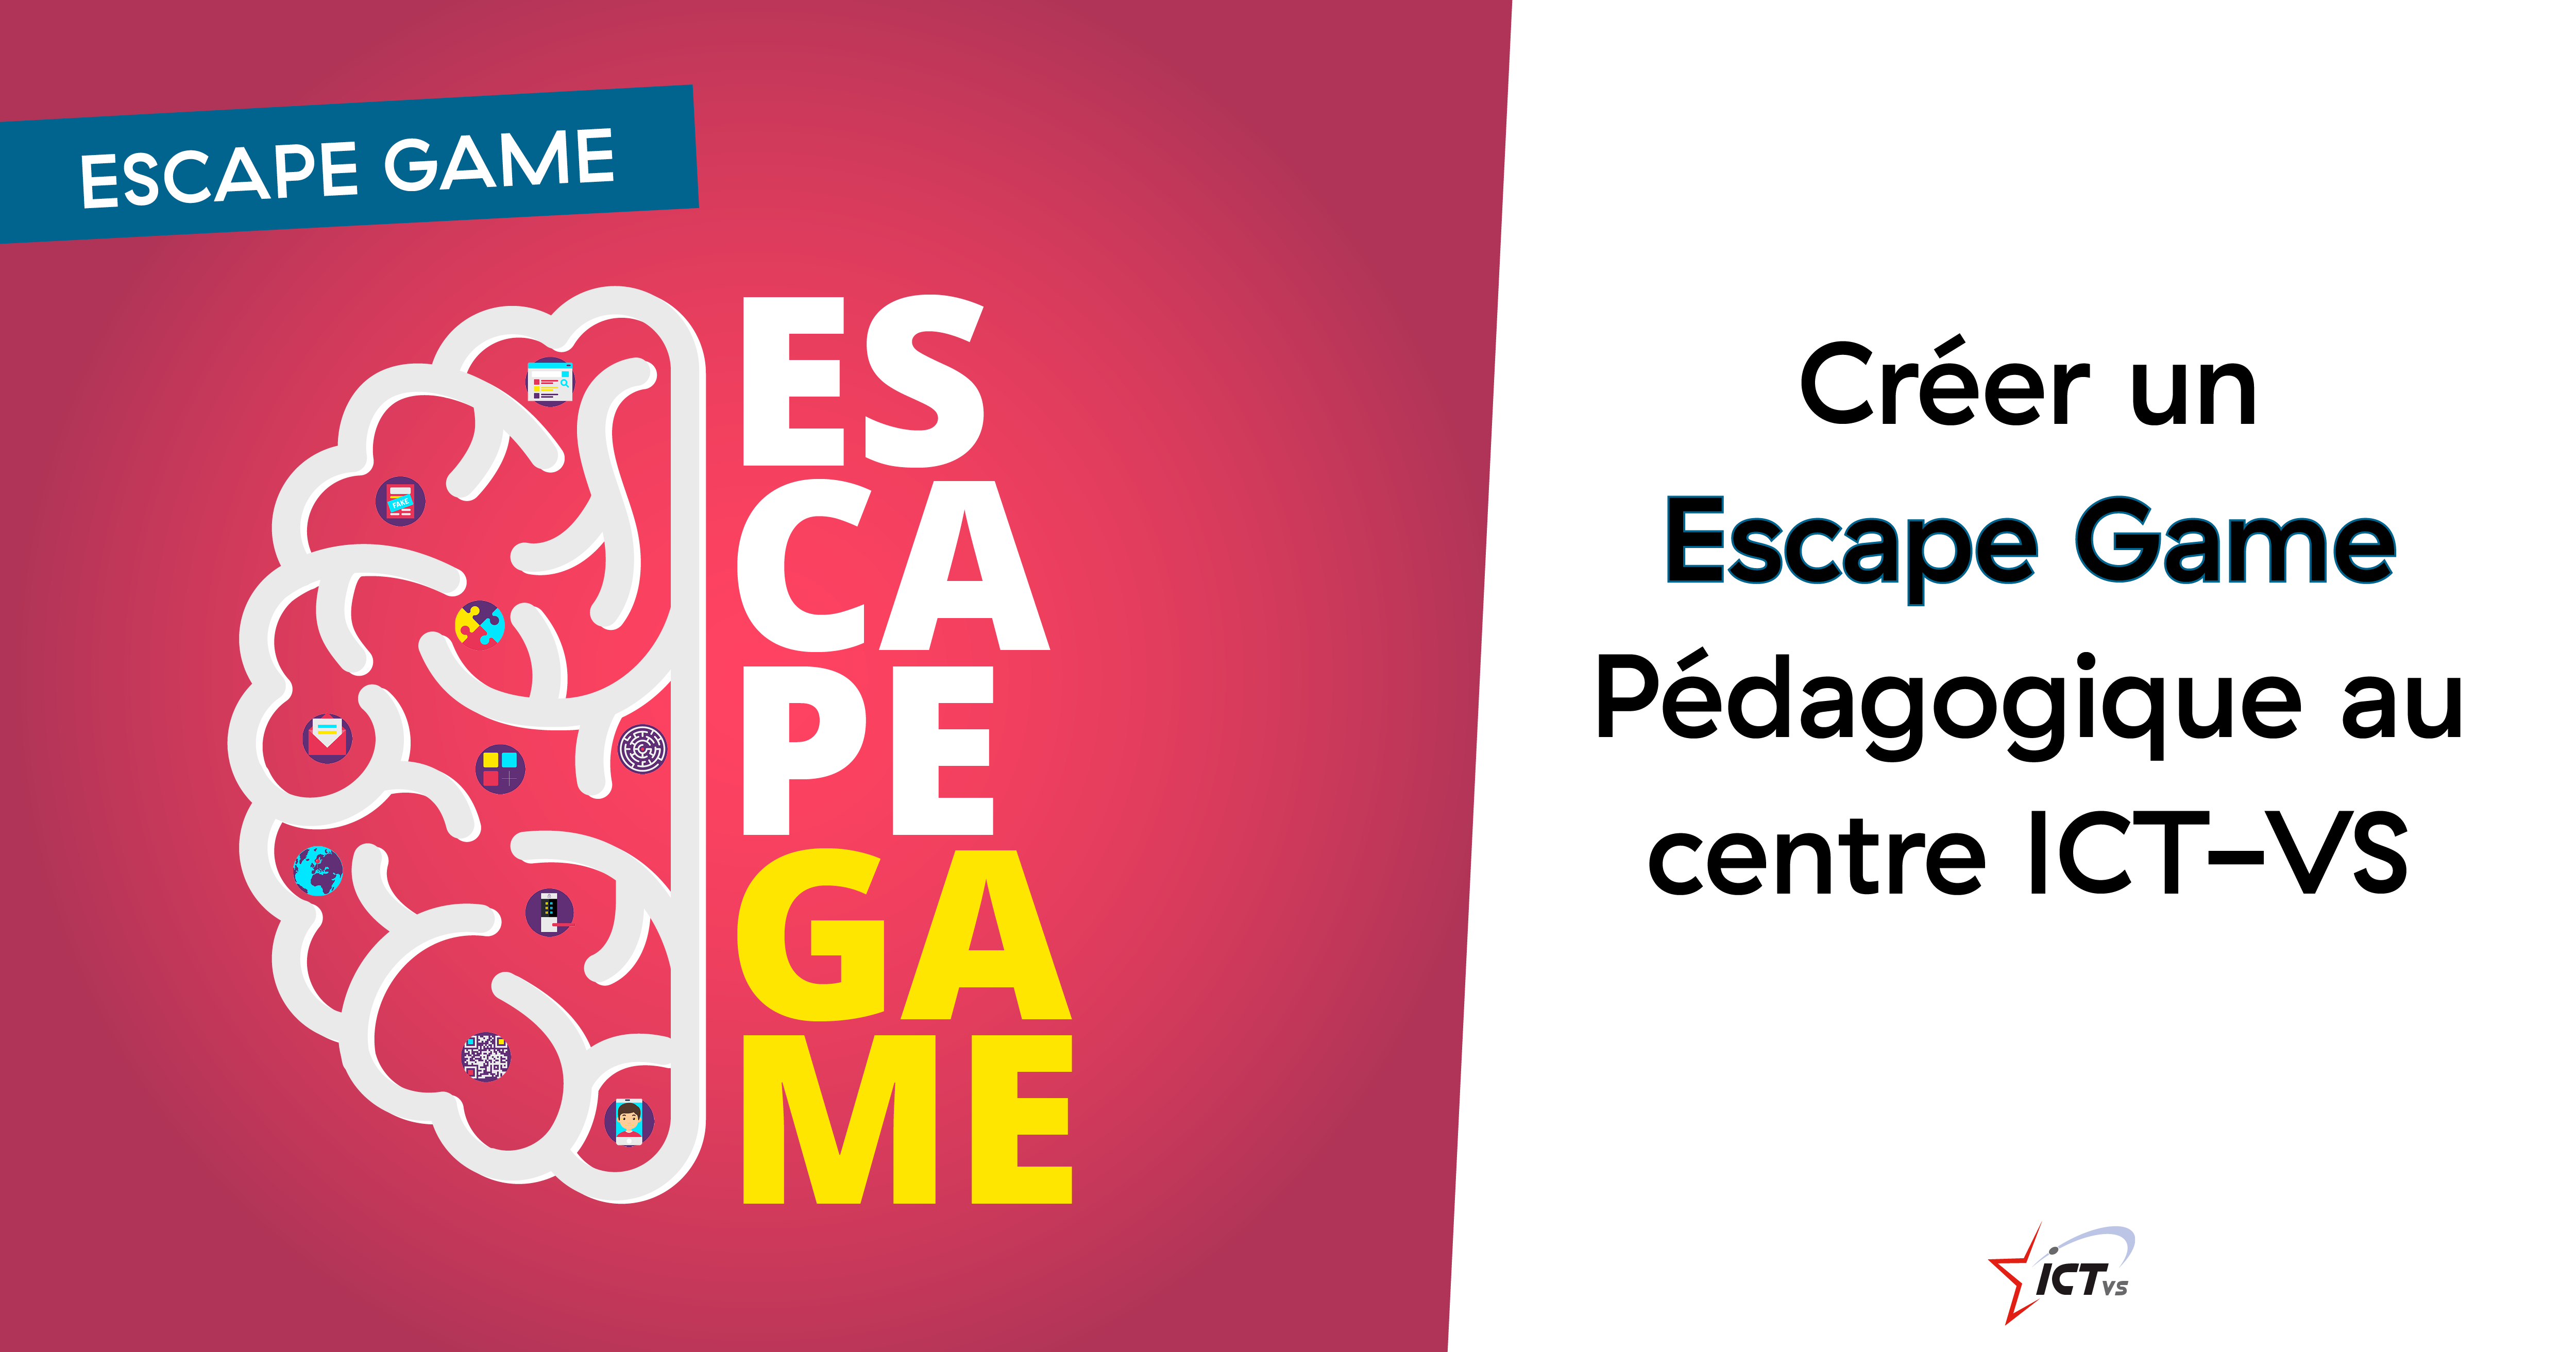 Escape Game pédagogique valaisan : 2e édition !